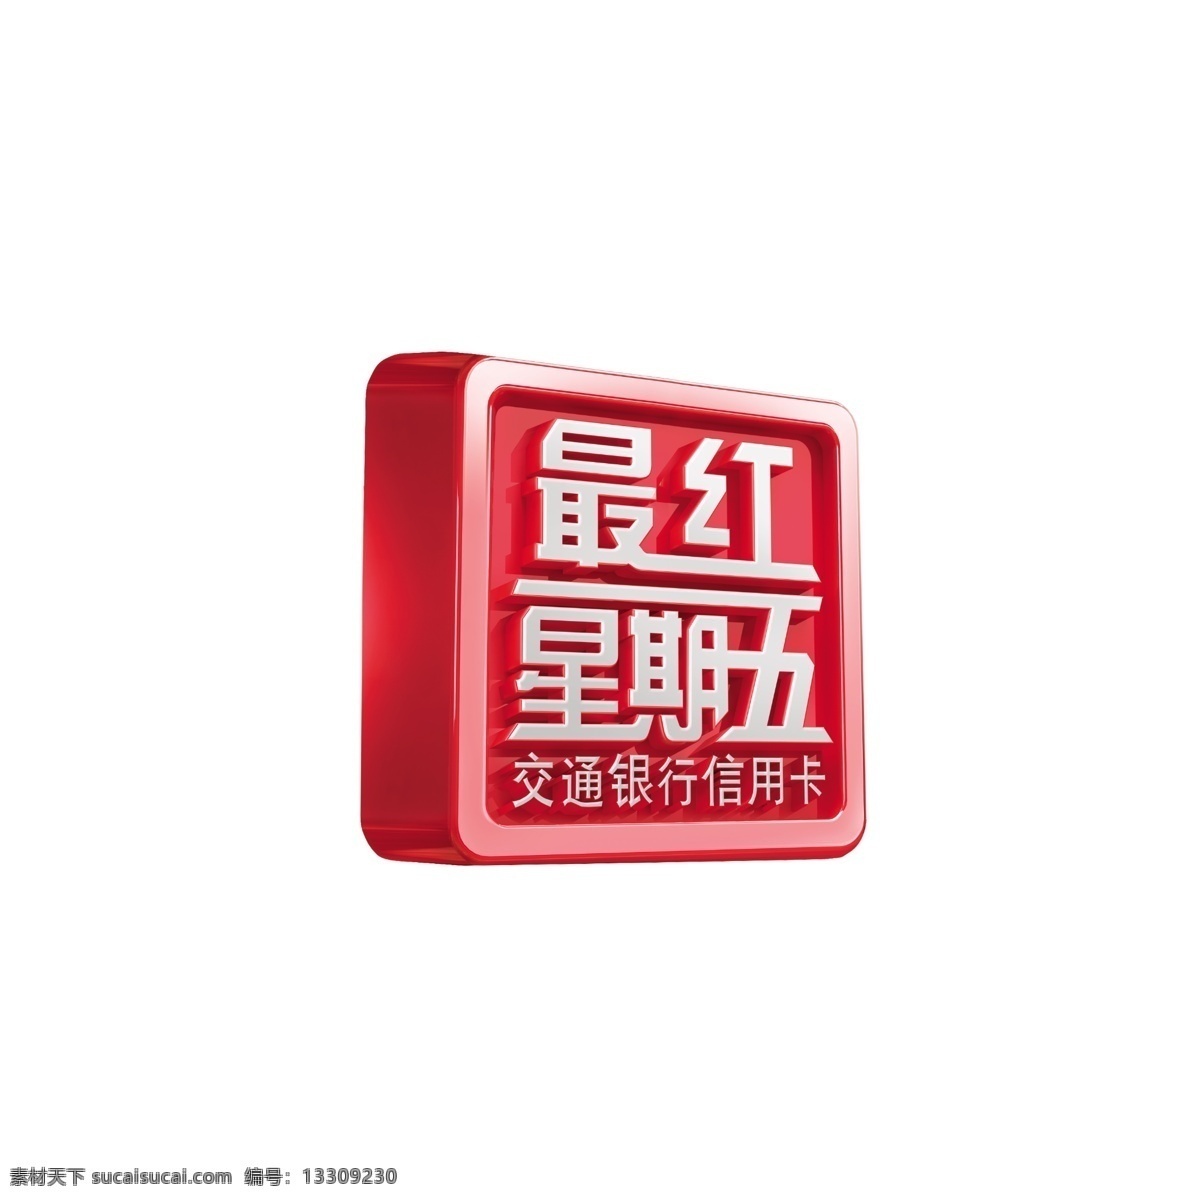 最红星期五 交行 交通银行 星期五 最红 信用卡 标志 logo设计